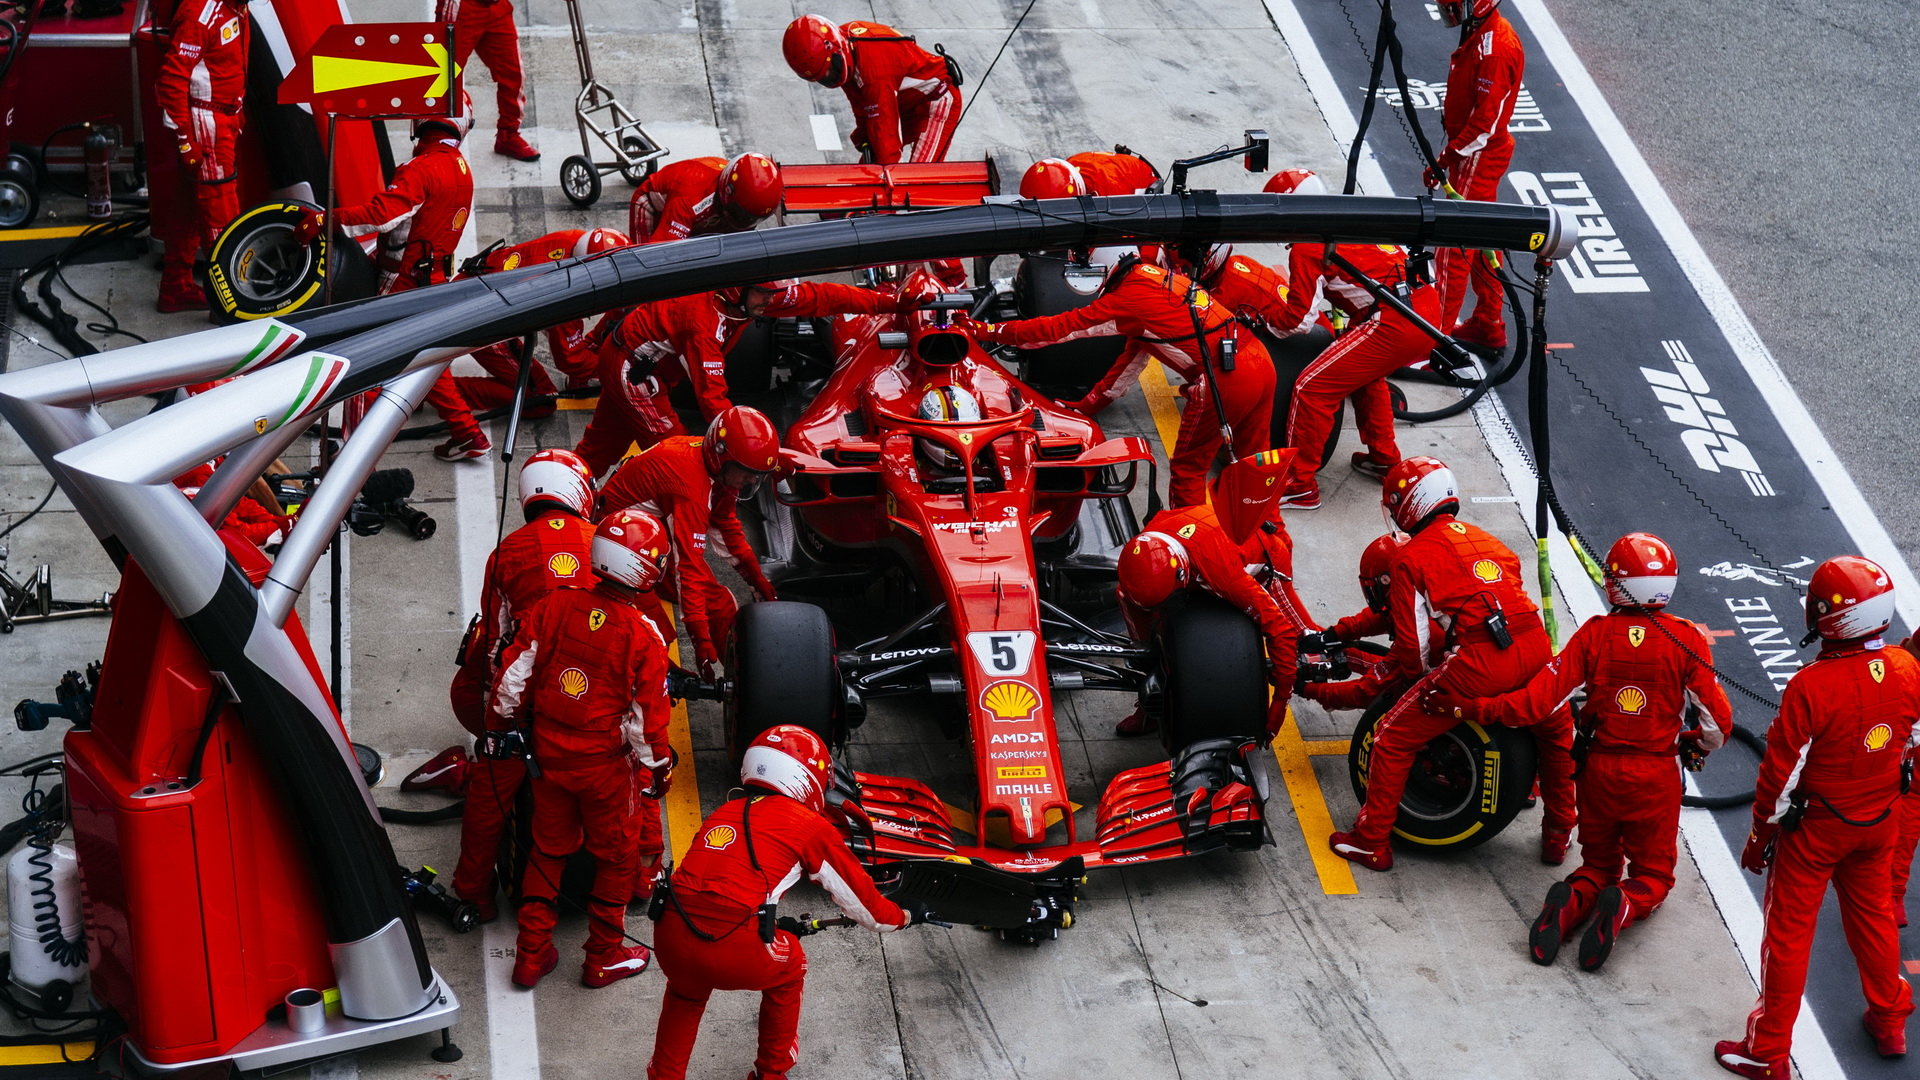 Sebastian Vettel u mechaniků Ferrari